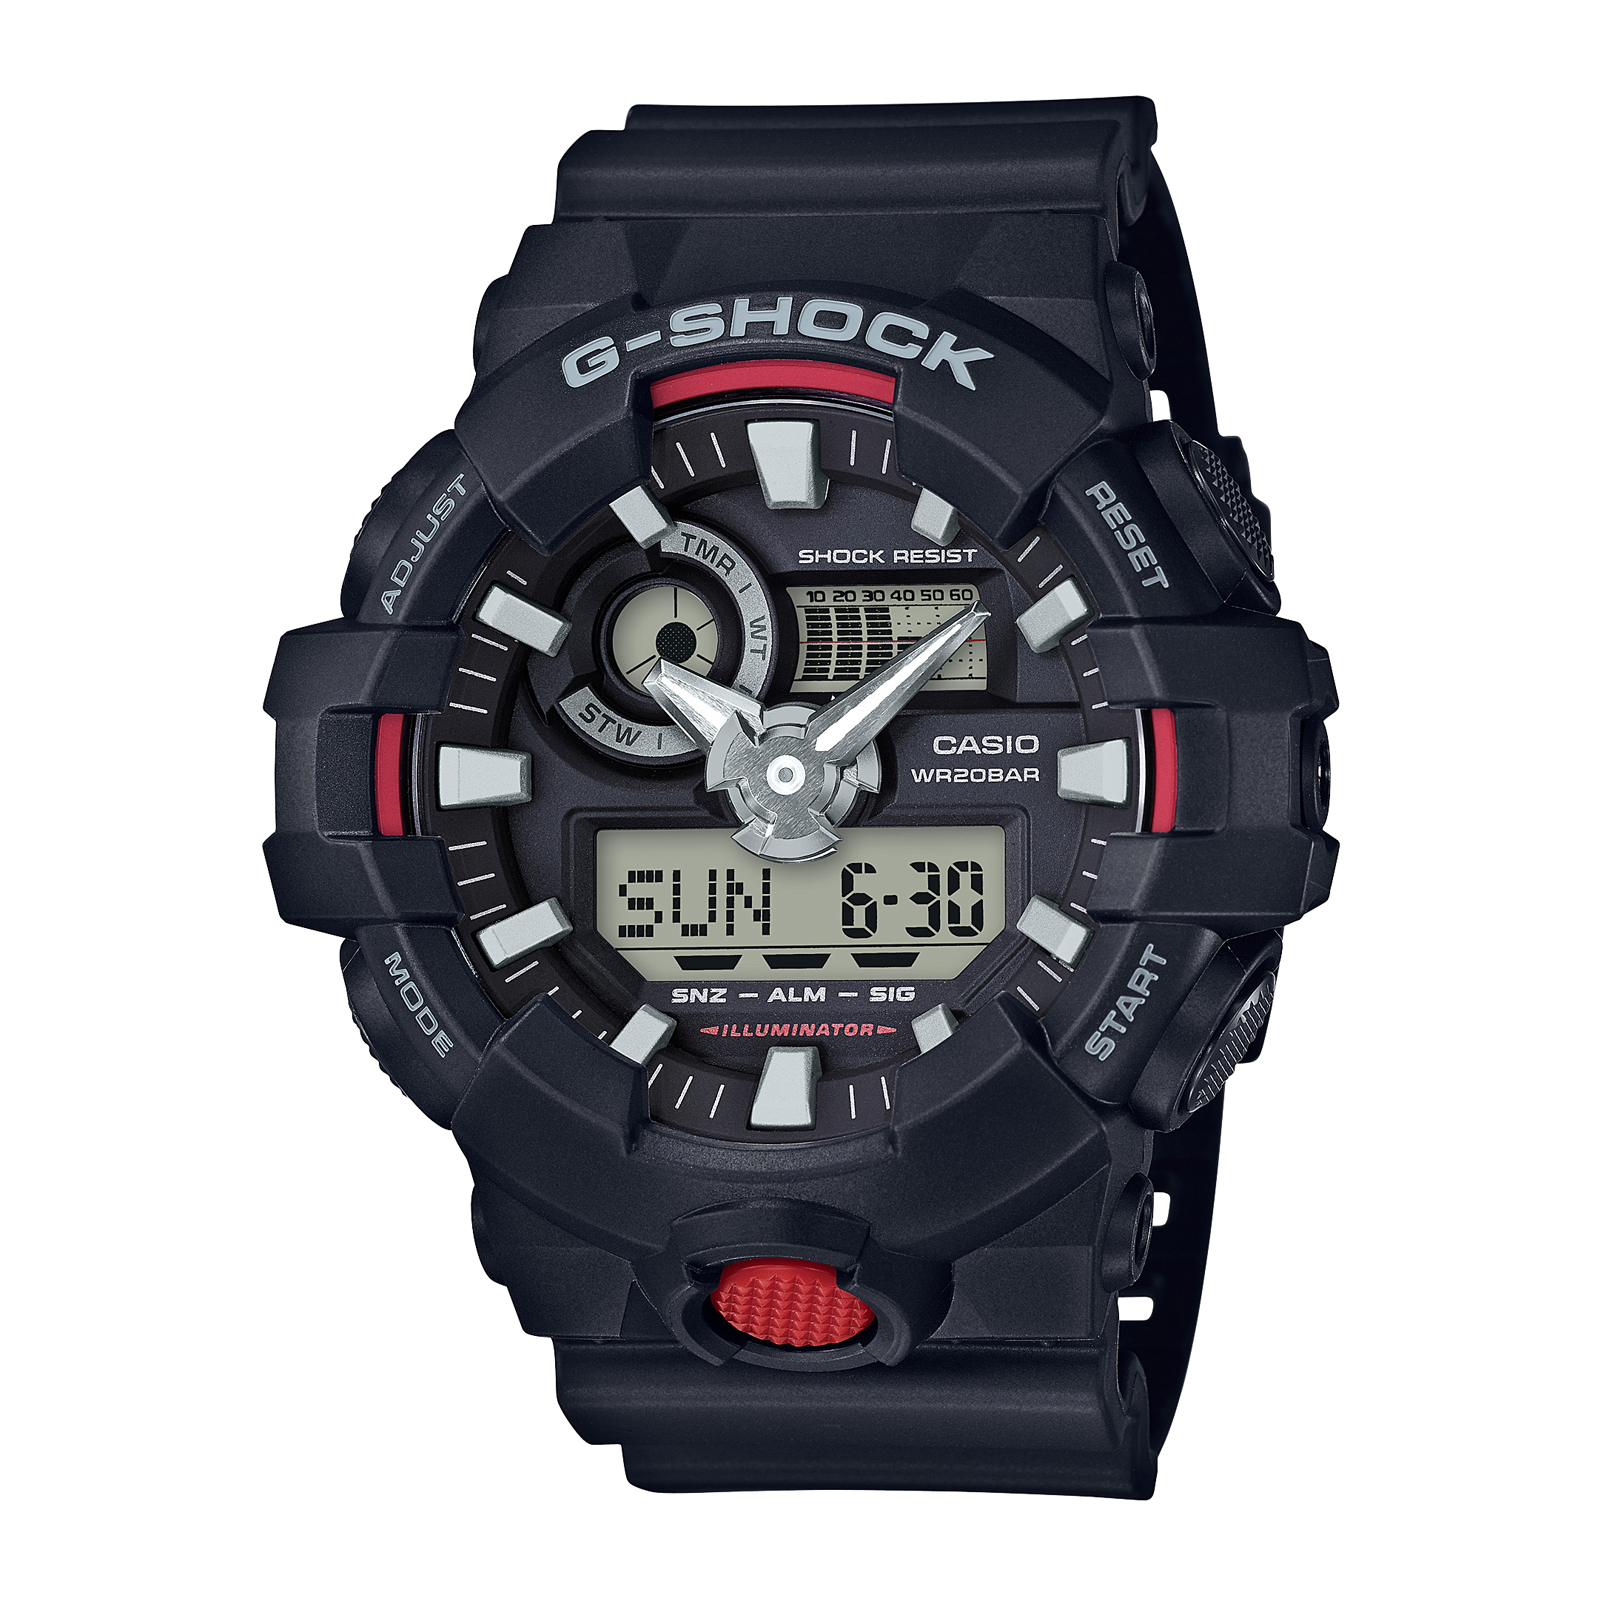 Reloj G-SHOCK GA-2200BNR-1A Carbono/Resina Hombre Negro - Btime